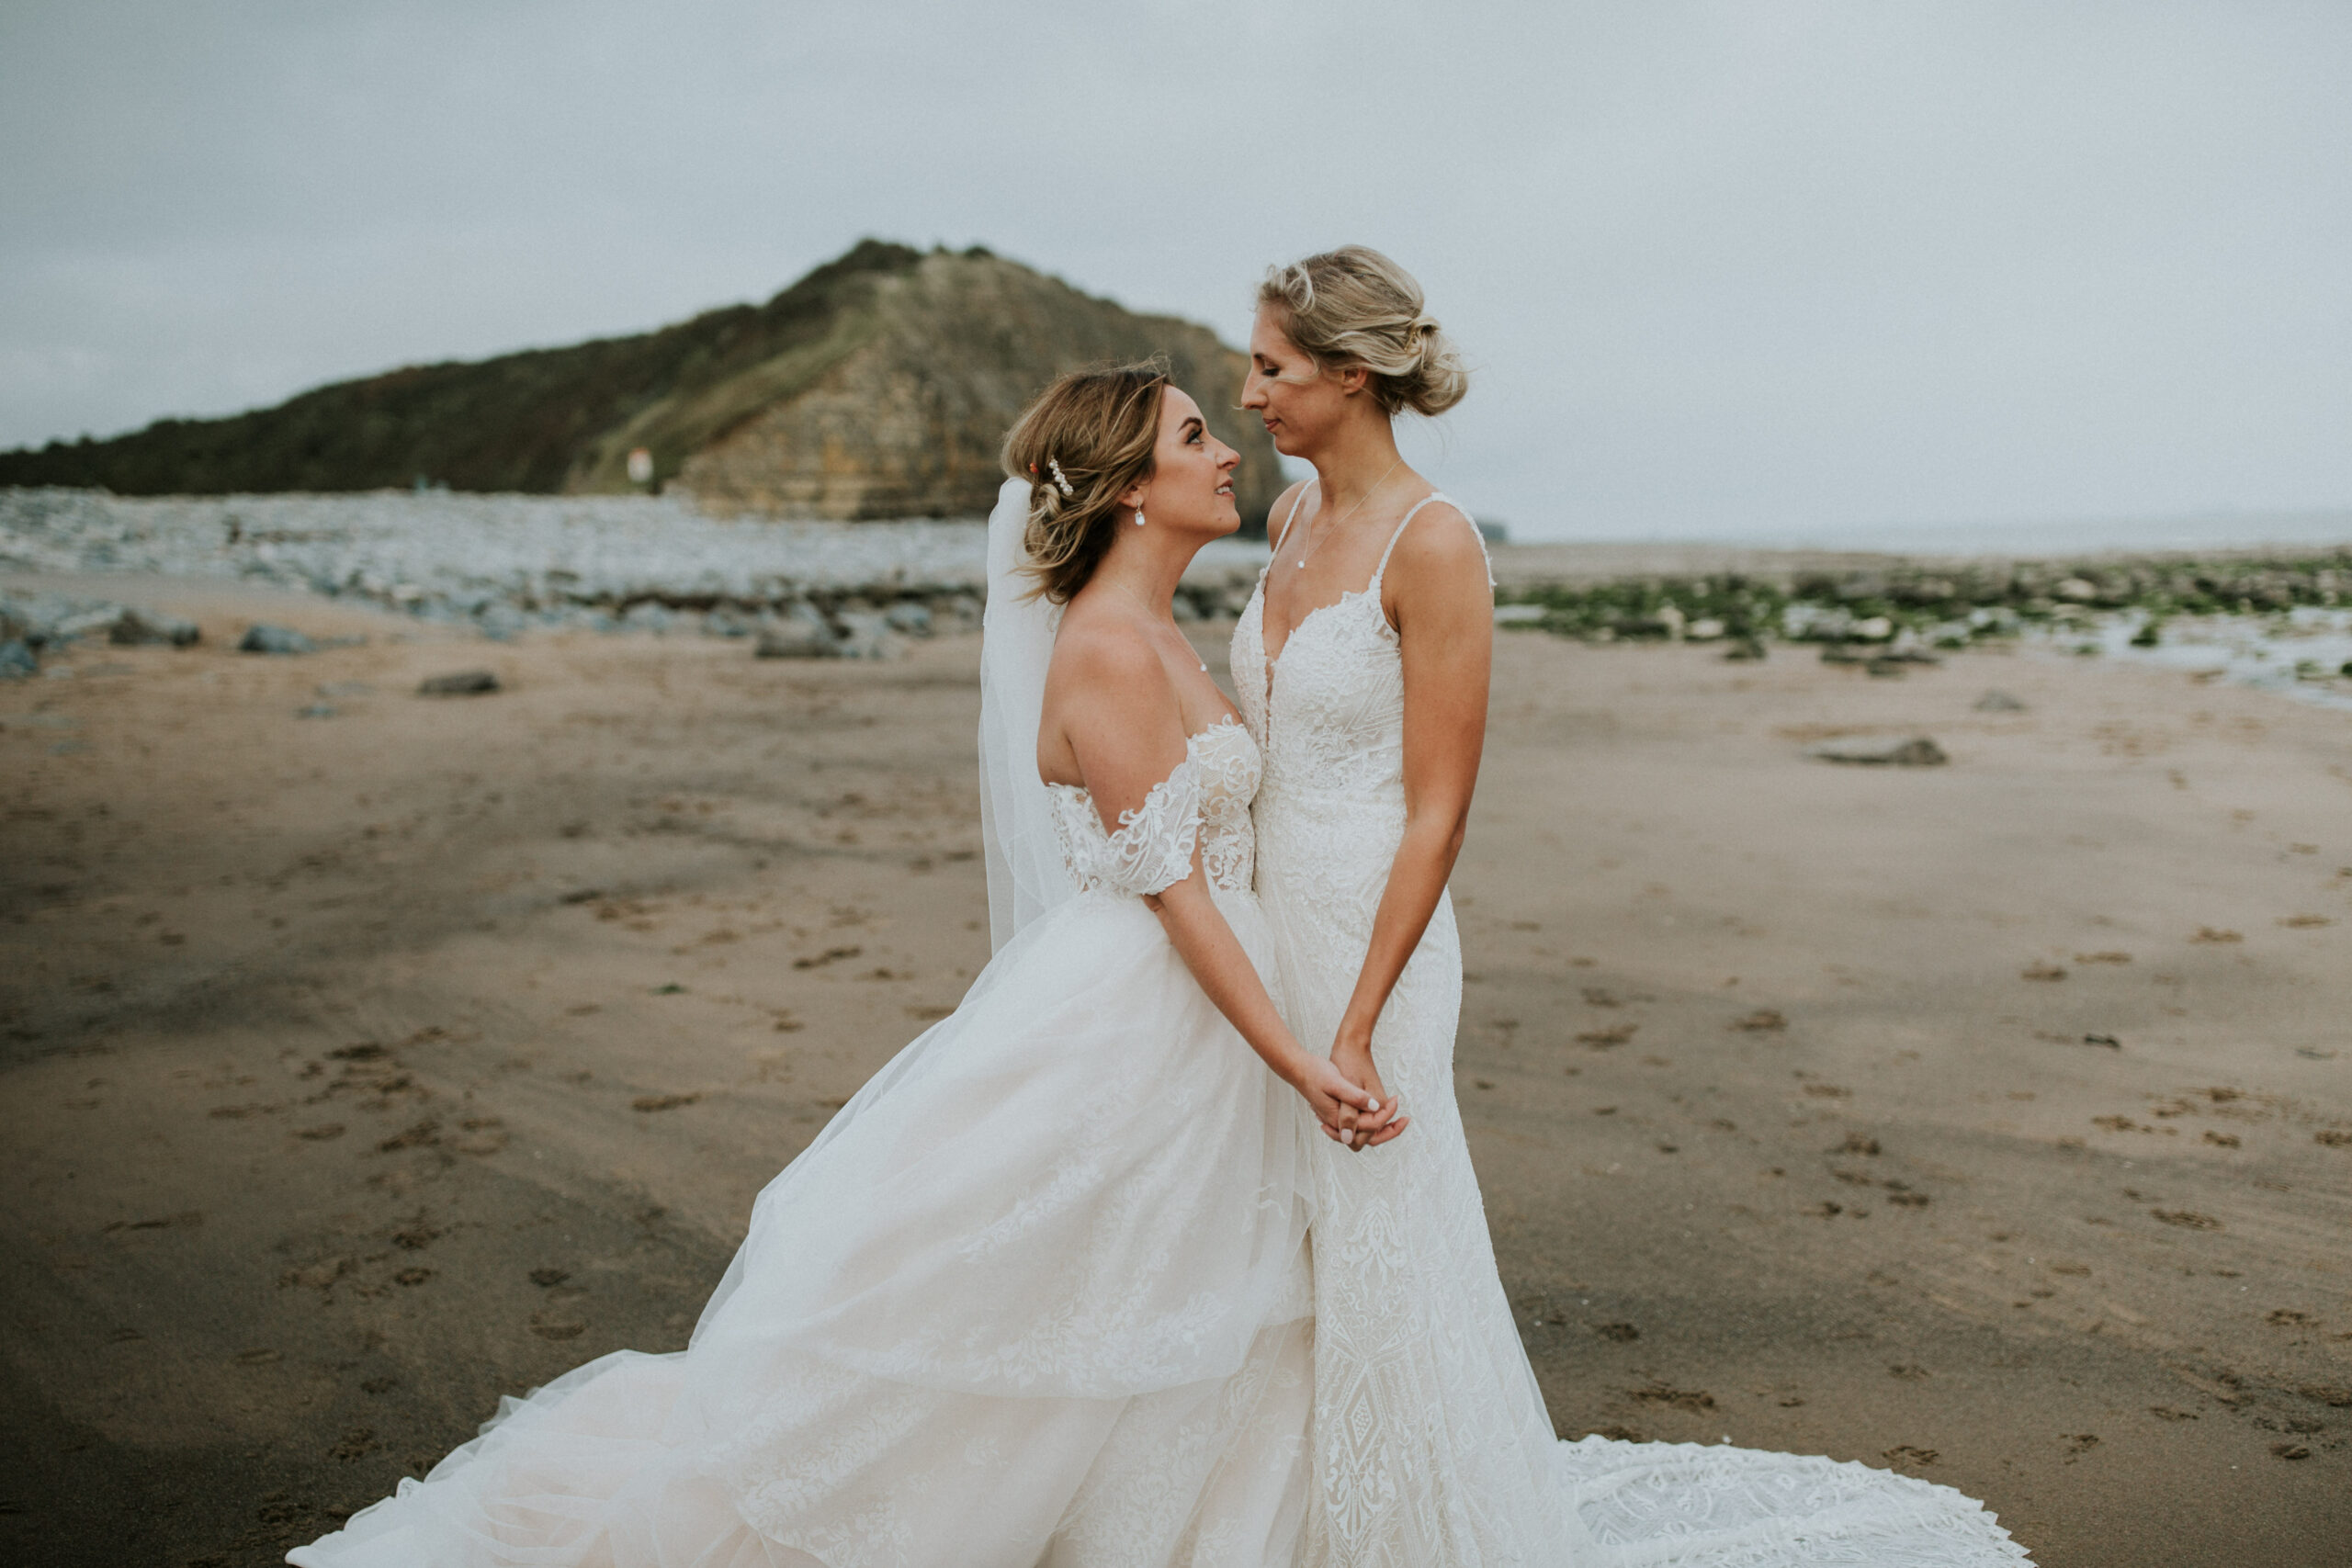 brides portraits down the beach 